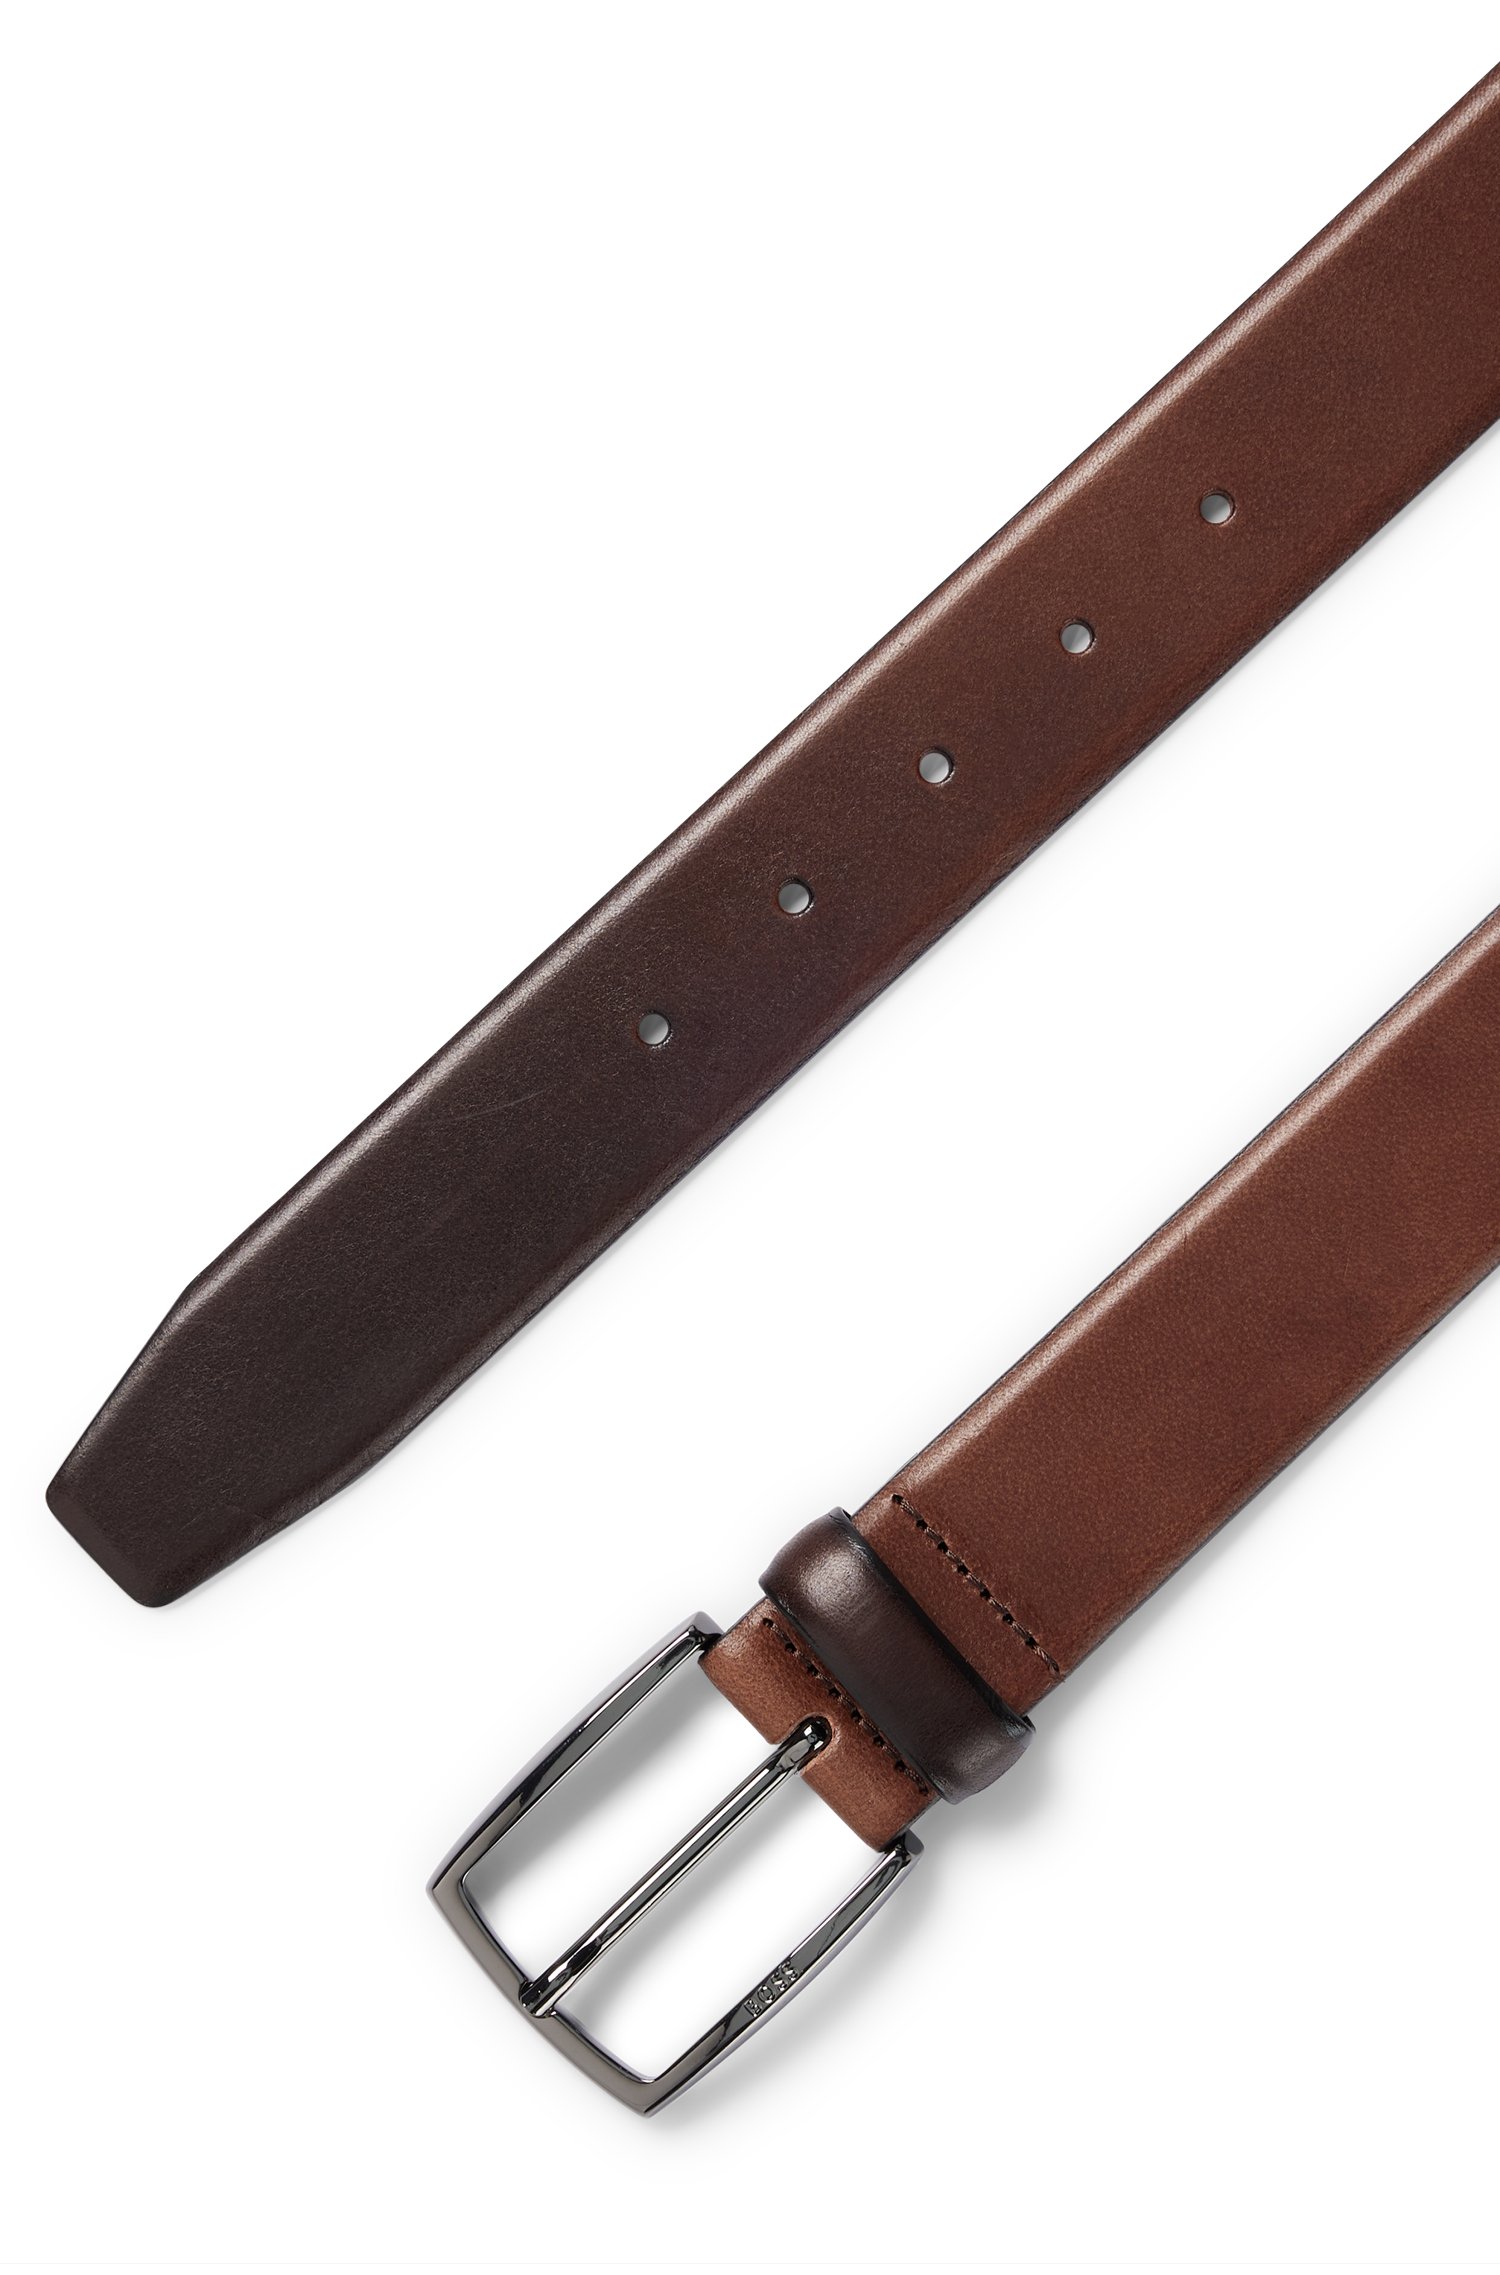 Cinturón de piel italiana con hebilla metal pesado pulido